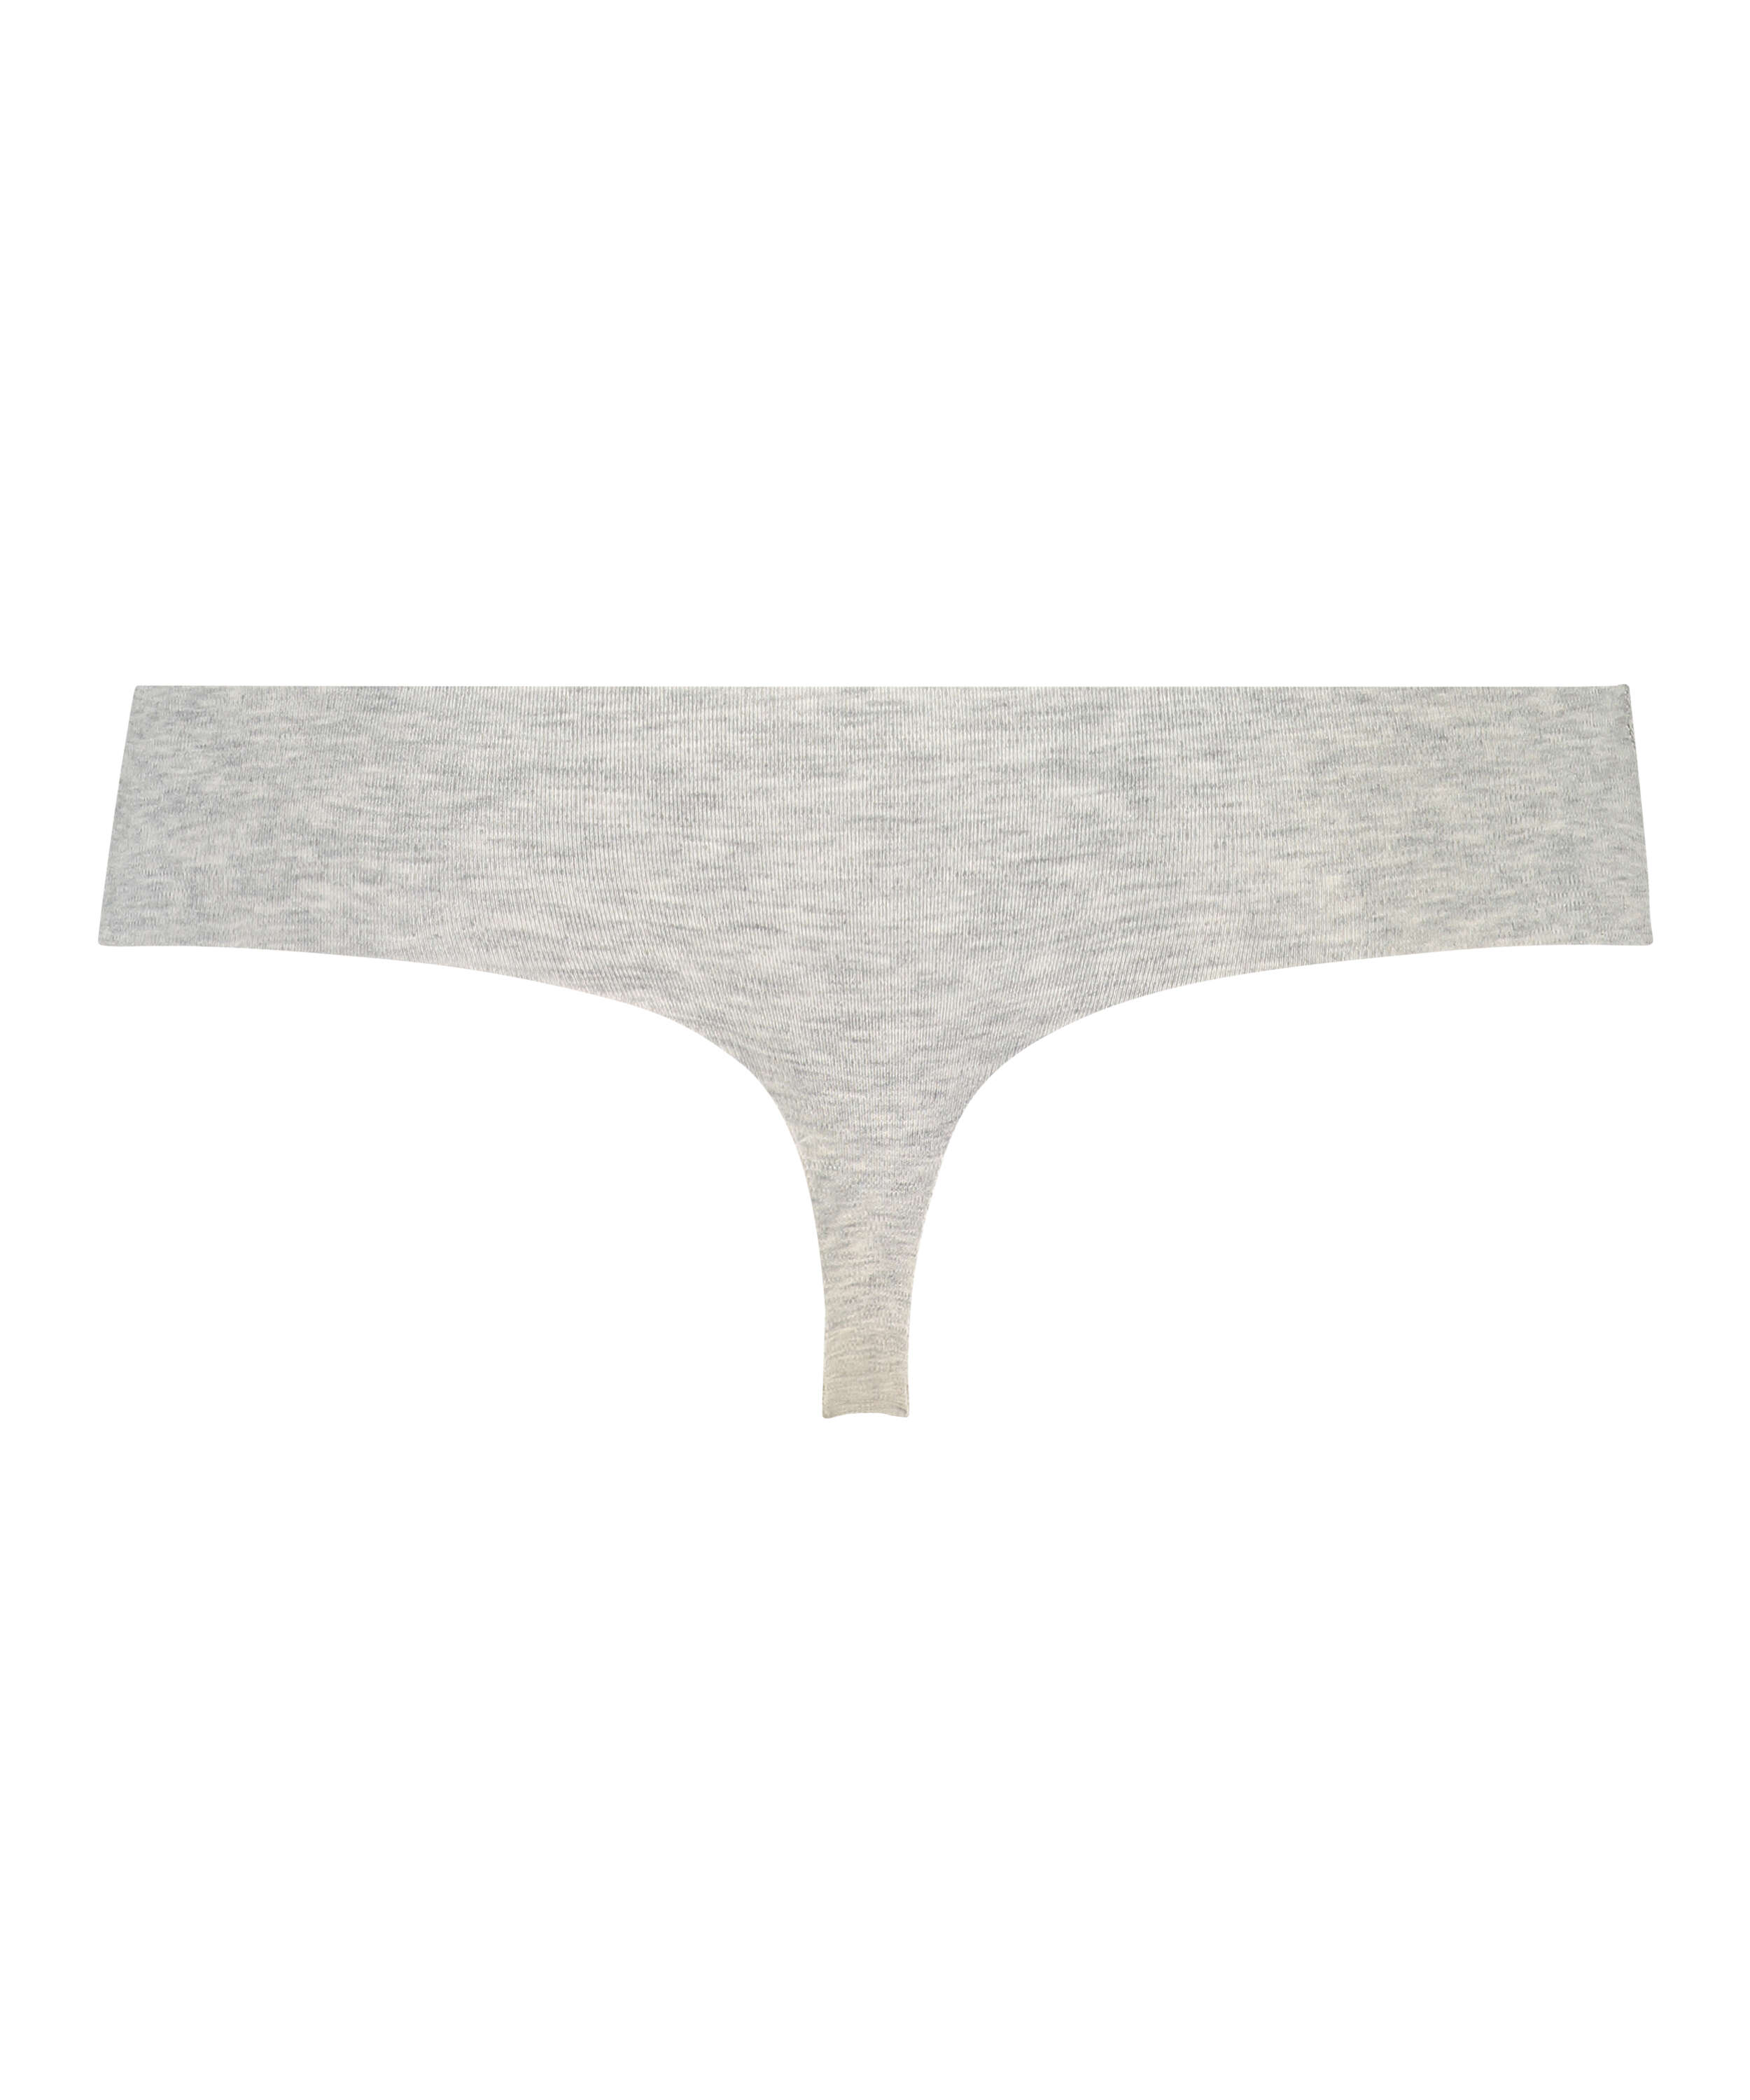 Invisible cotton thong, Grey, main